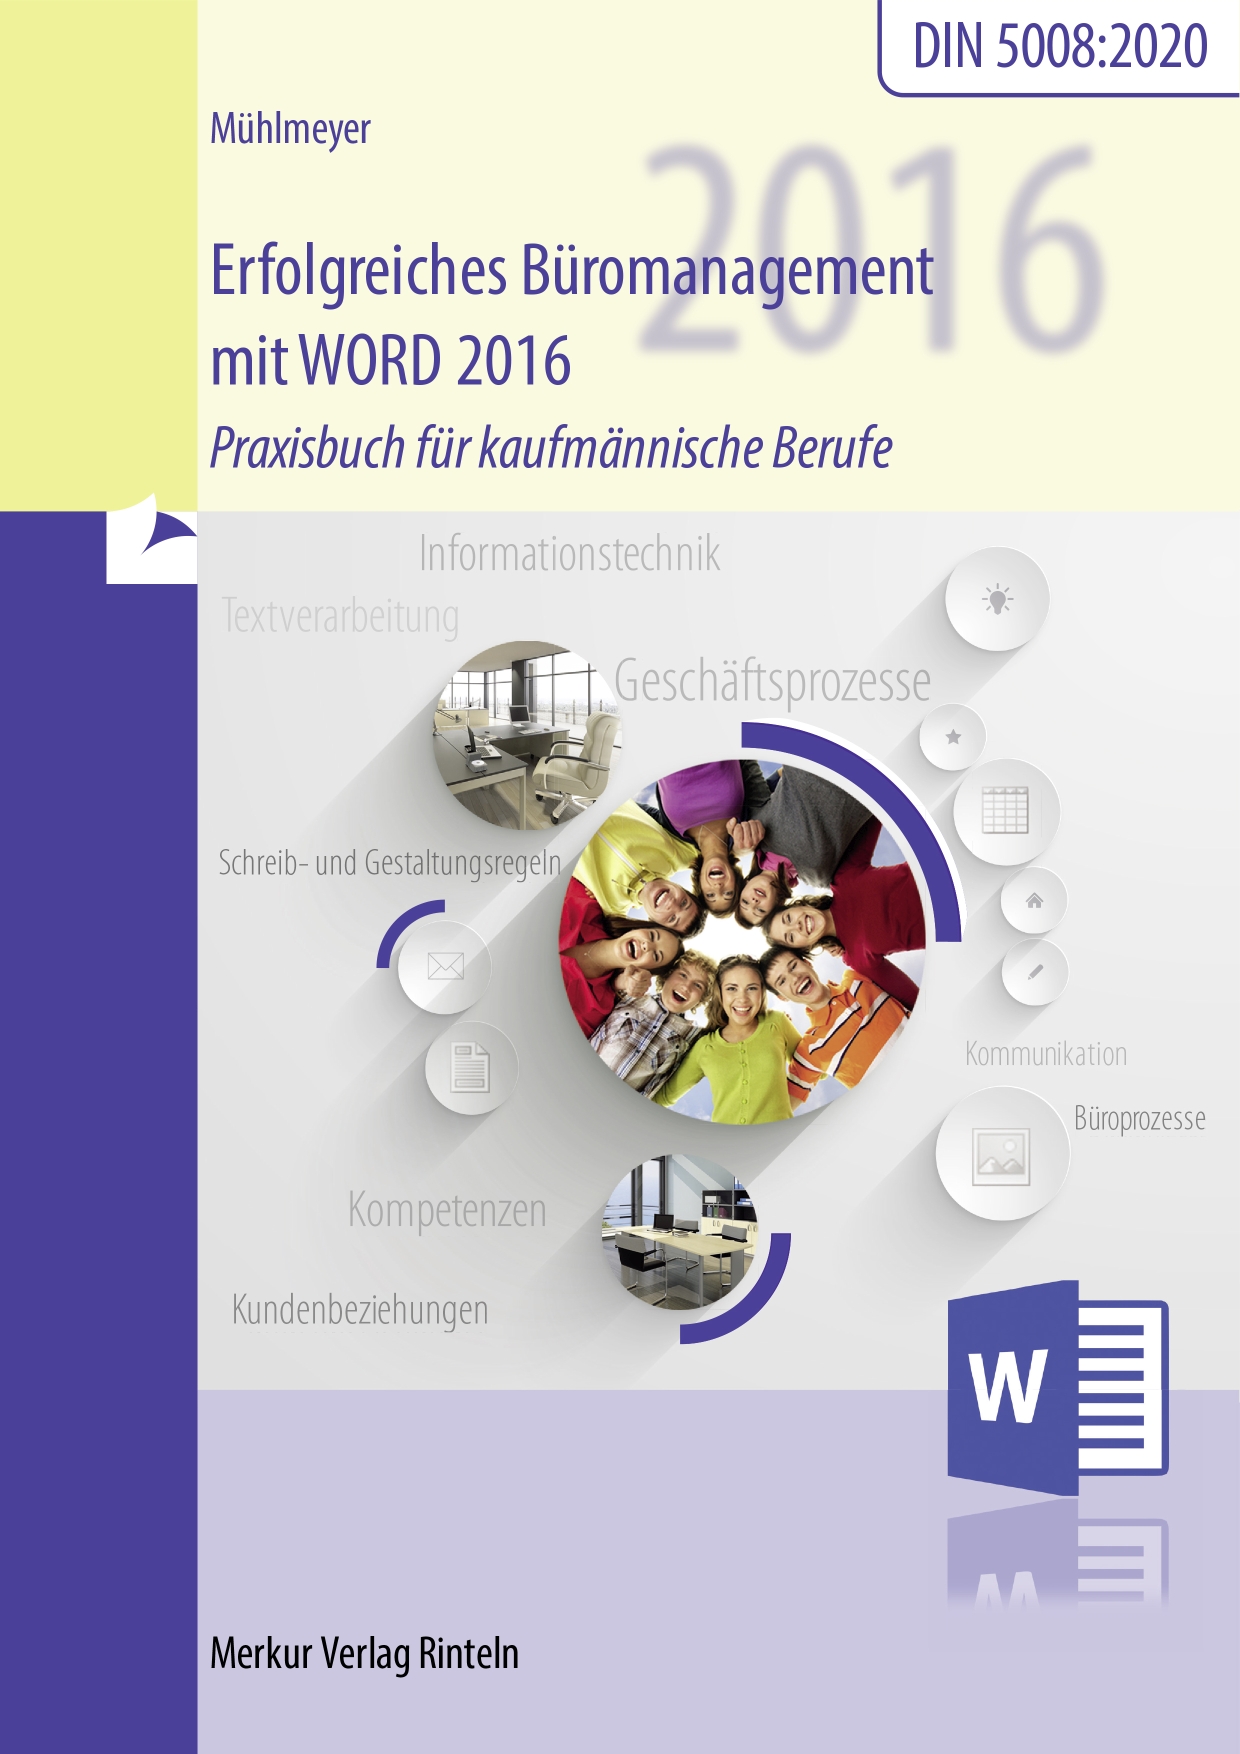 Erfolgreiches Büromanagement WORD 2016 Praxisbuch für kaufmännische Berufe mit neuer DIN 5008